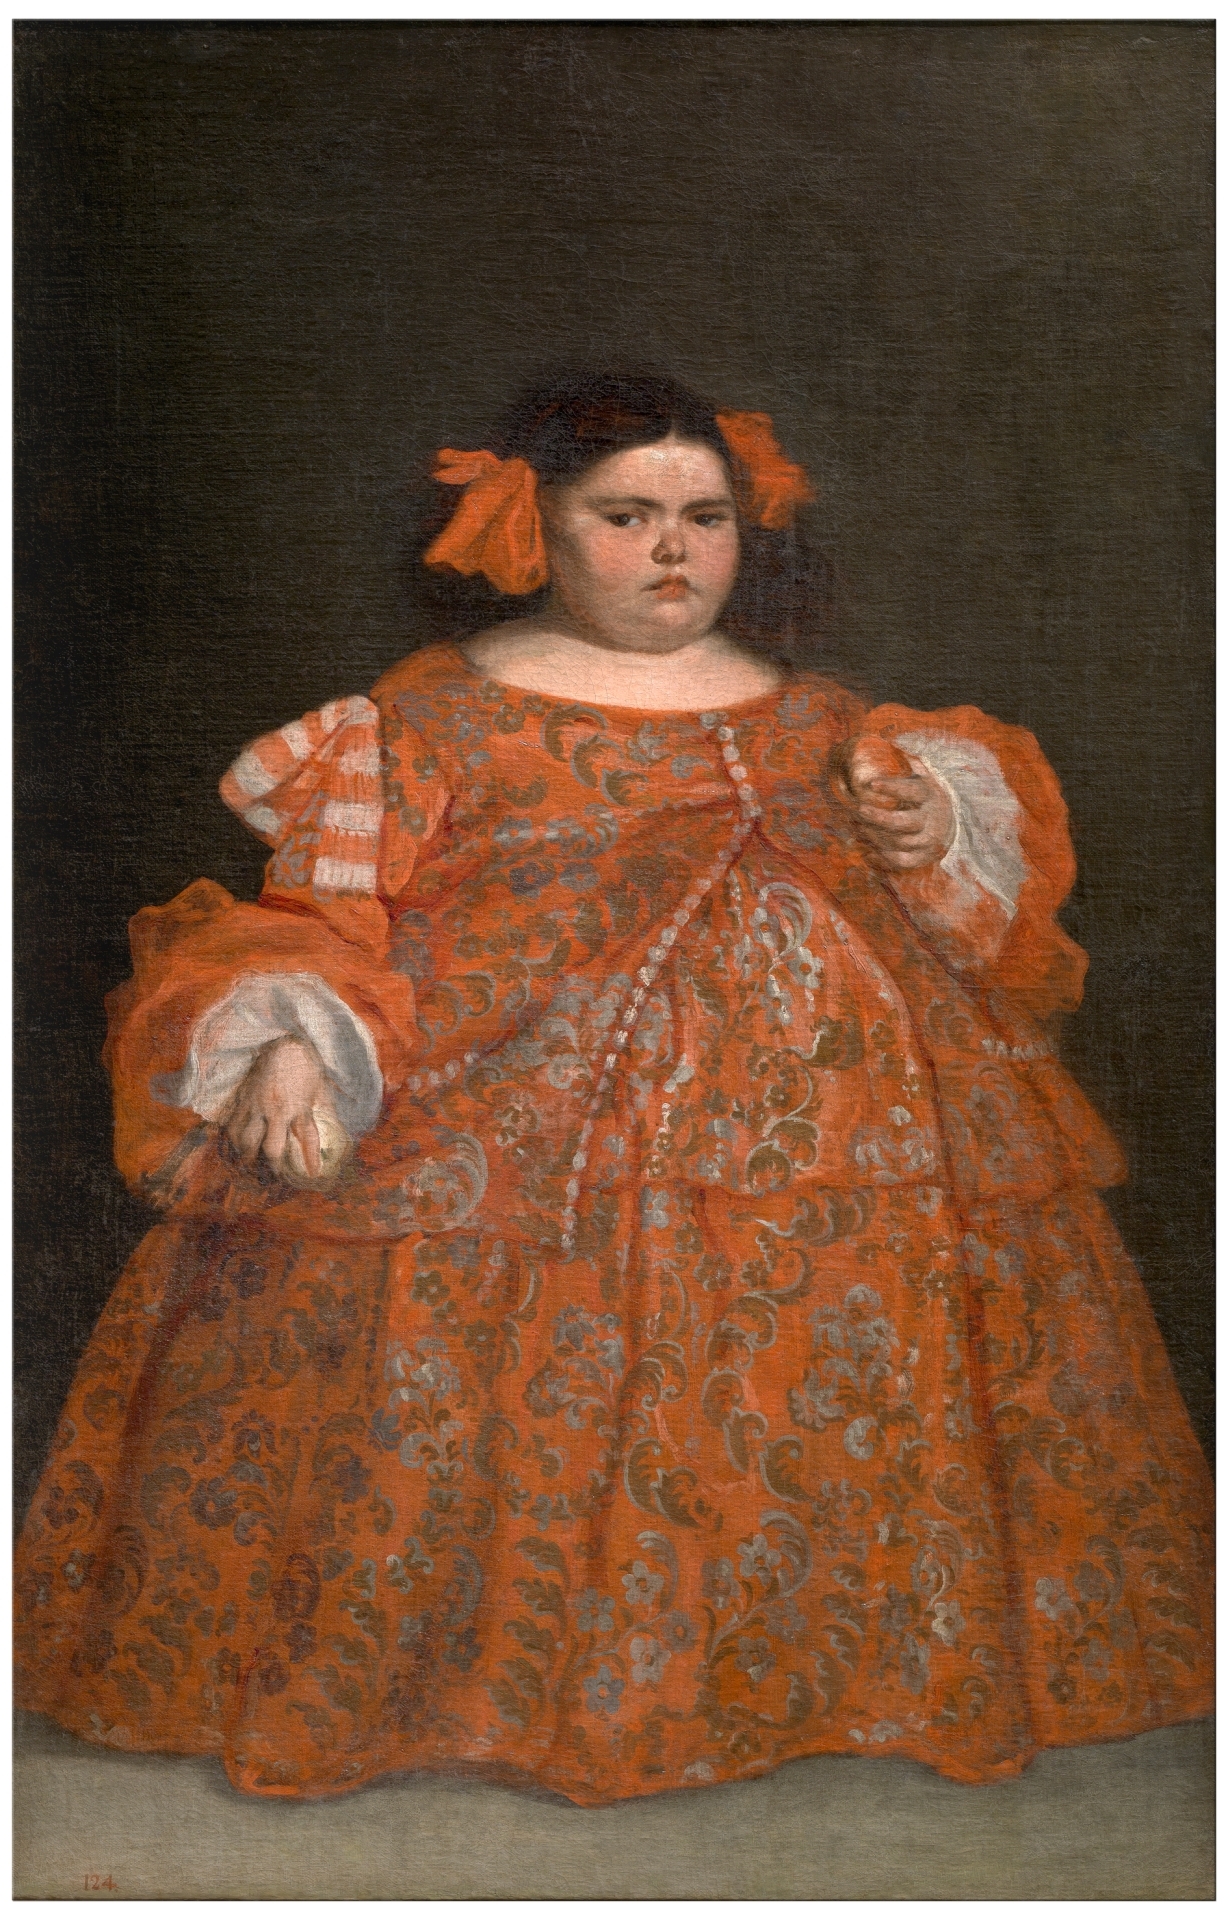 Eugenia Martínez Vallejo, La Monstrua vêtue by Juan Carreño de Miranda - Aux environs de 1680 - 165 x 107 cm Museo del Prado